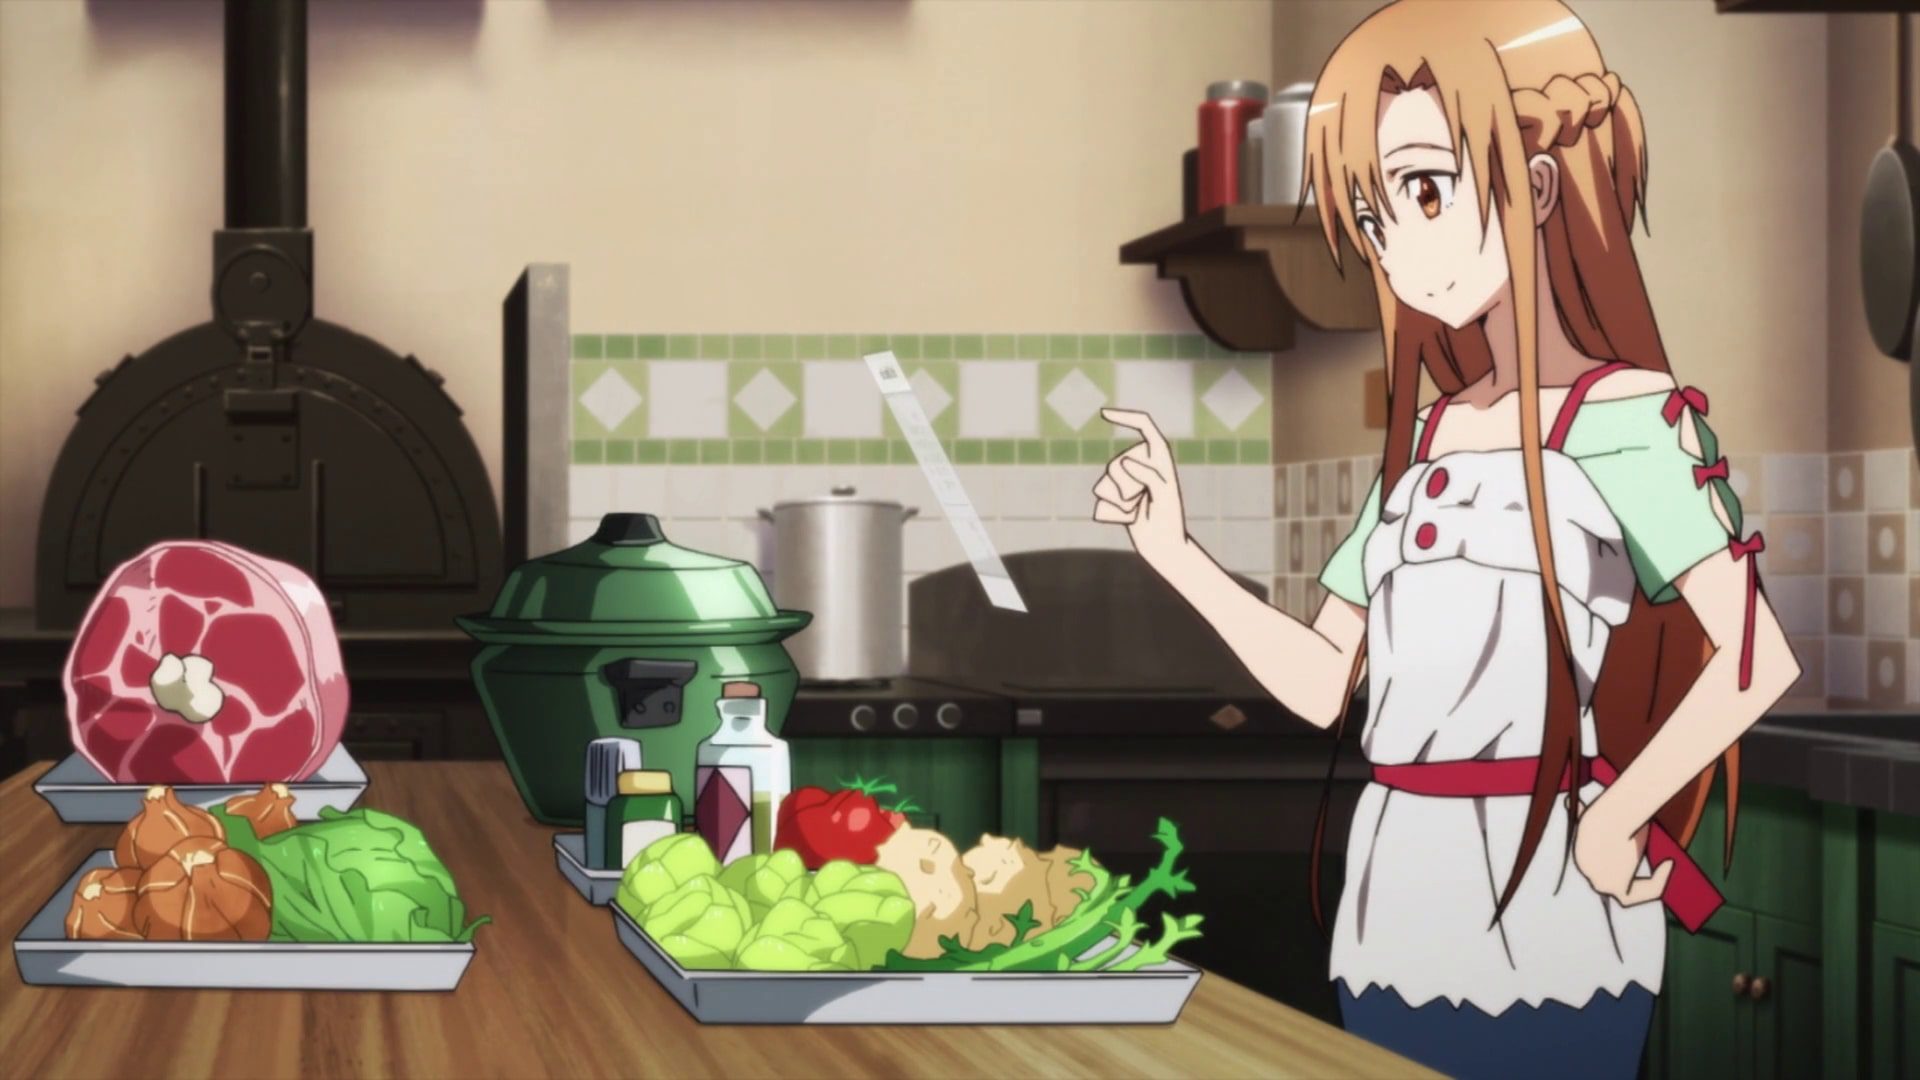 Kirito loves asuna's cooking